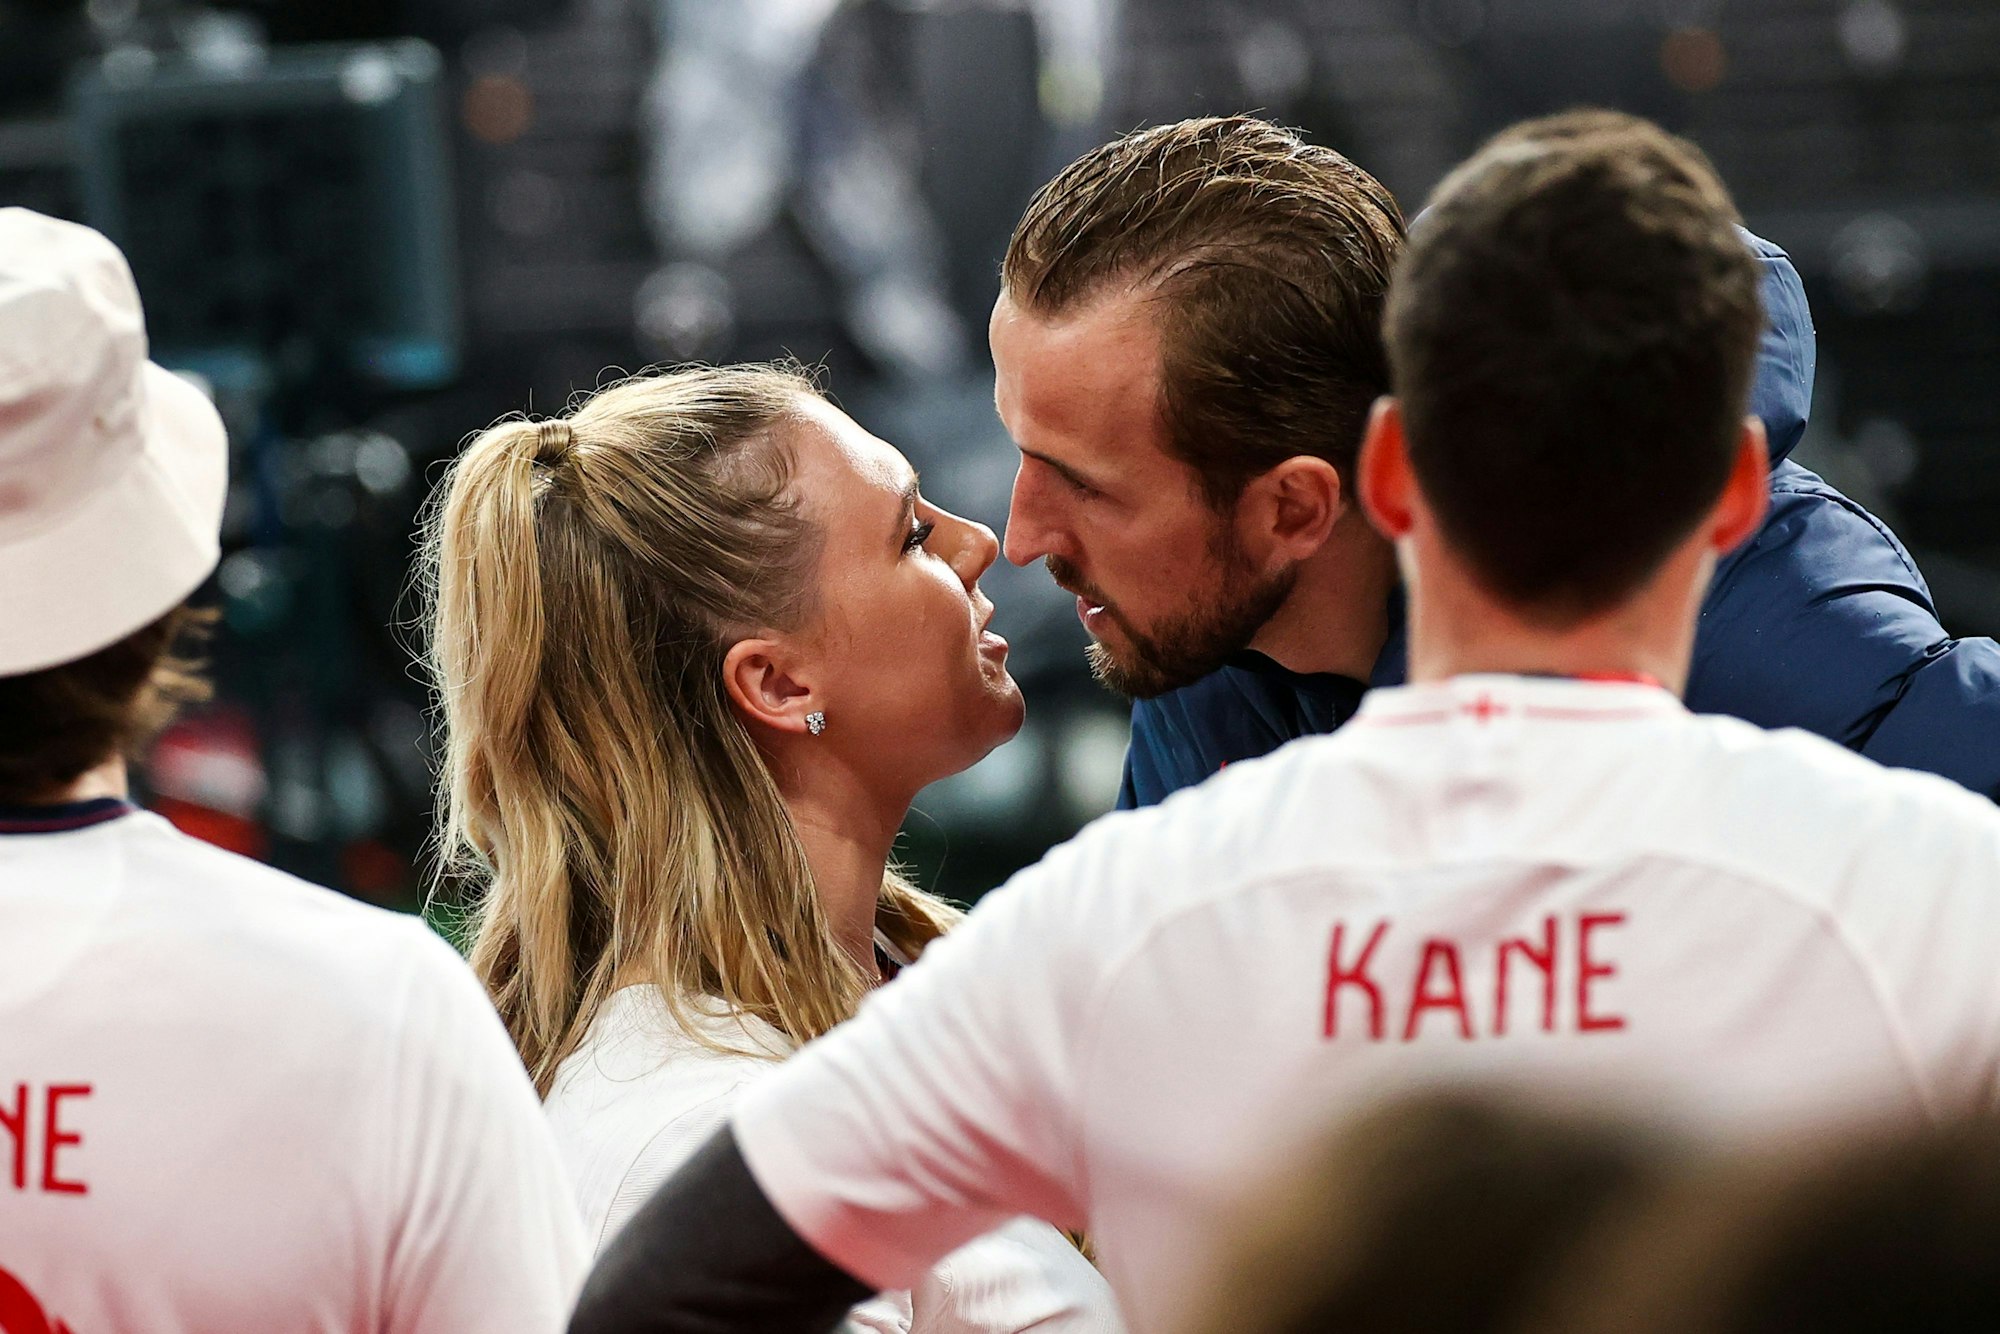 Englands Harry Kane küsst nach dem Spiel seine Frau Katie Goodland.